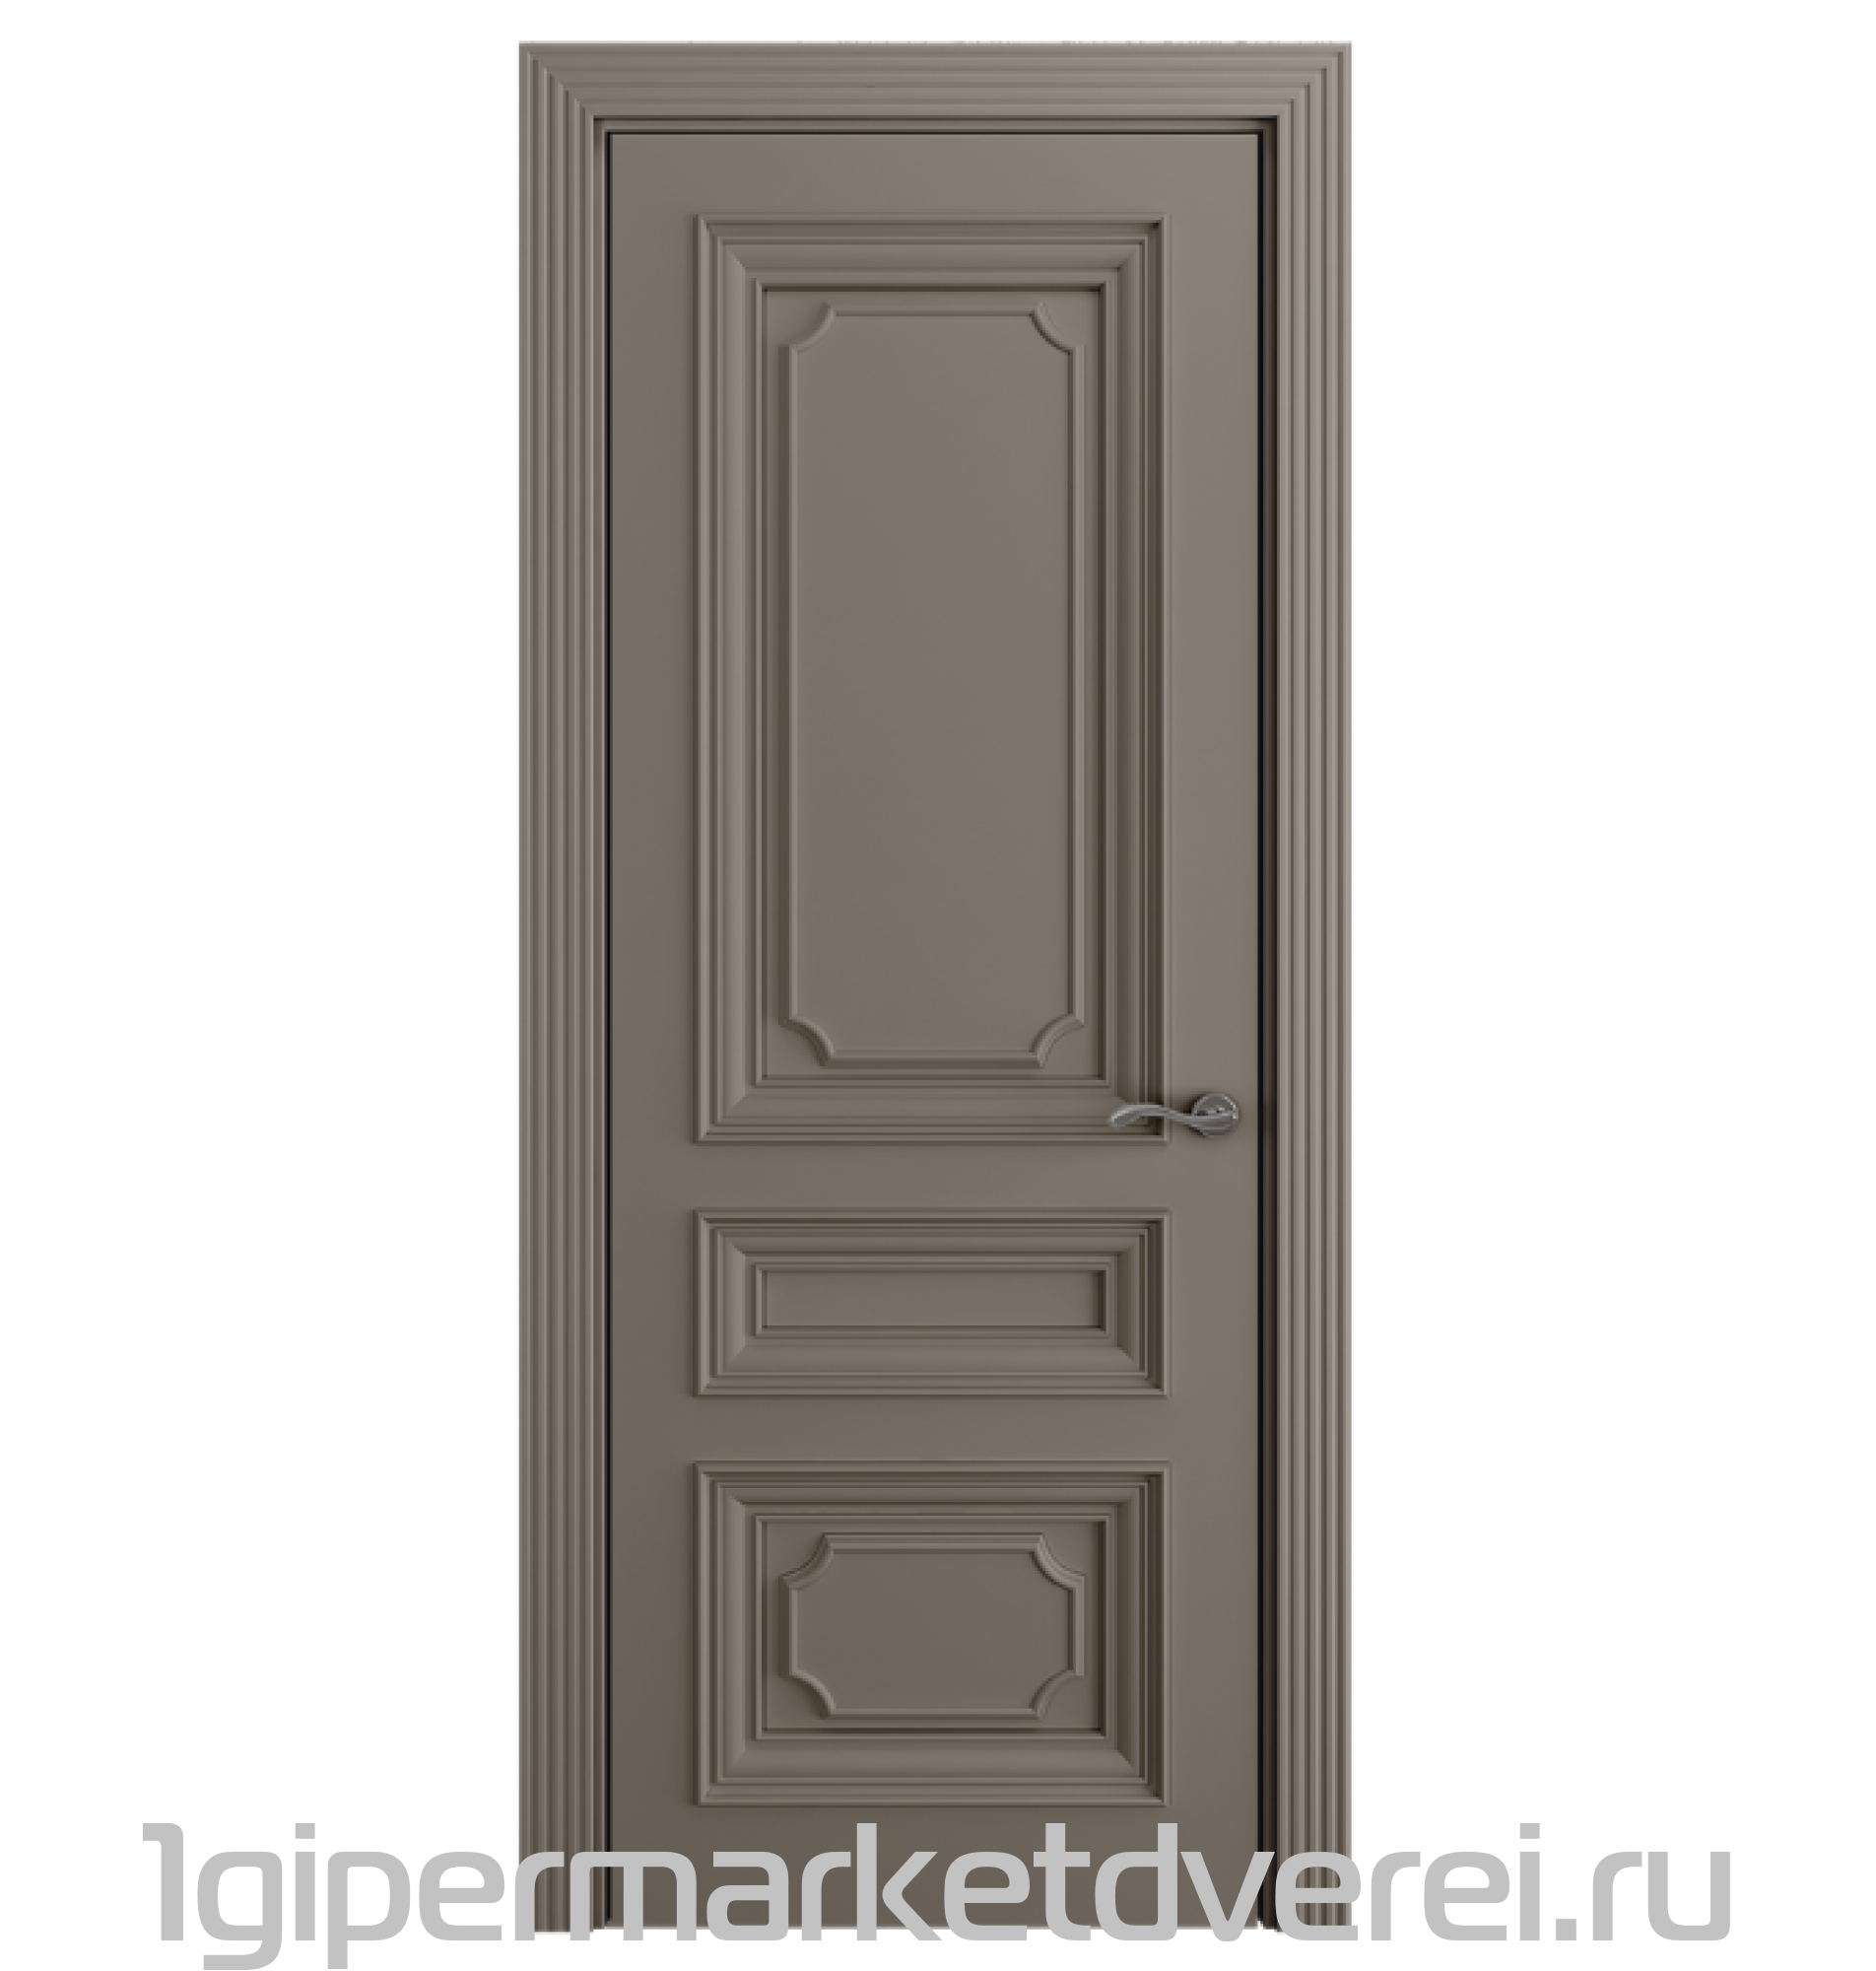 Межкомнатная дверь DINASTIA DN032 производителя Perfecto Porte